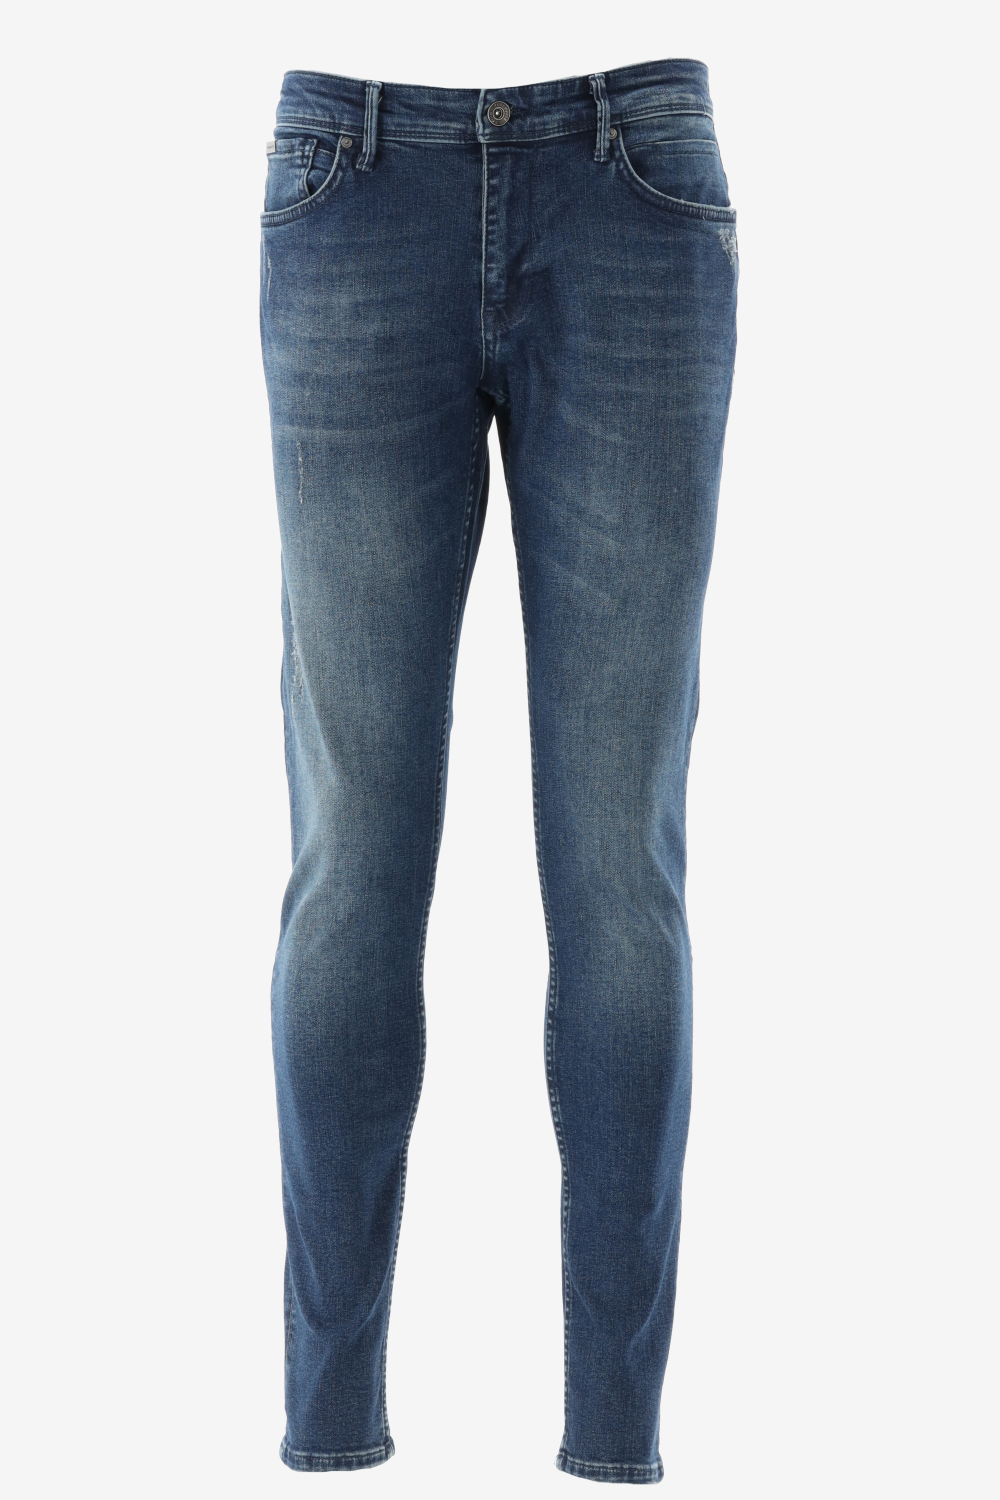 Purewhite - Jone Skinny Fit Heren Skinny Fit   Jeans  - Blauw - Maat 29